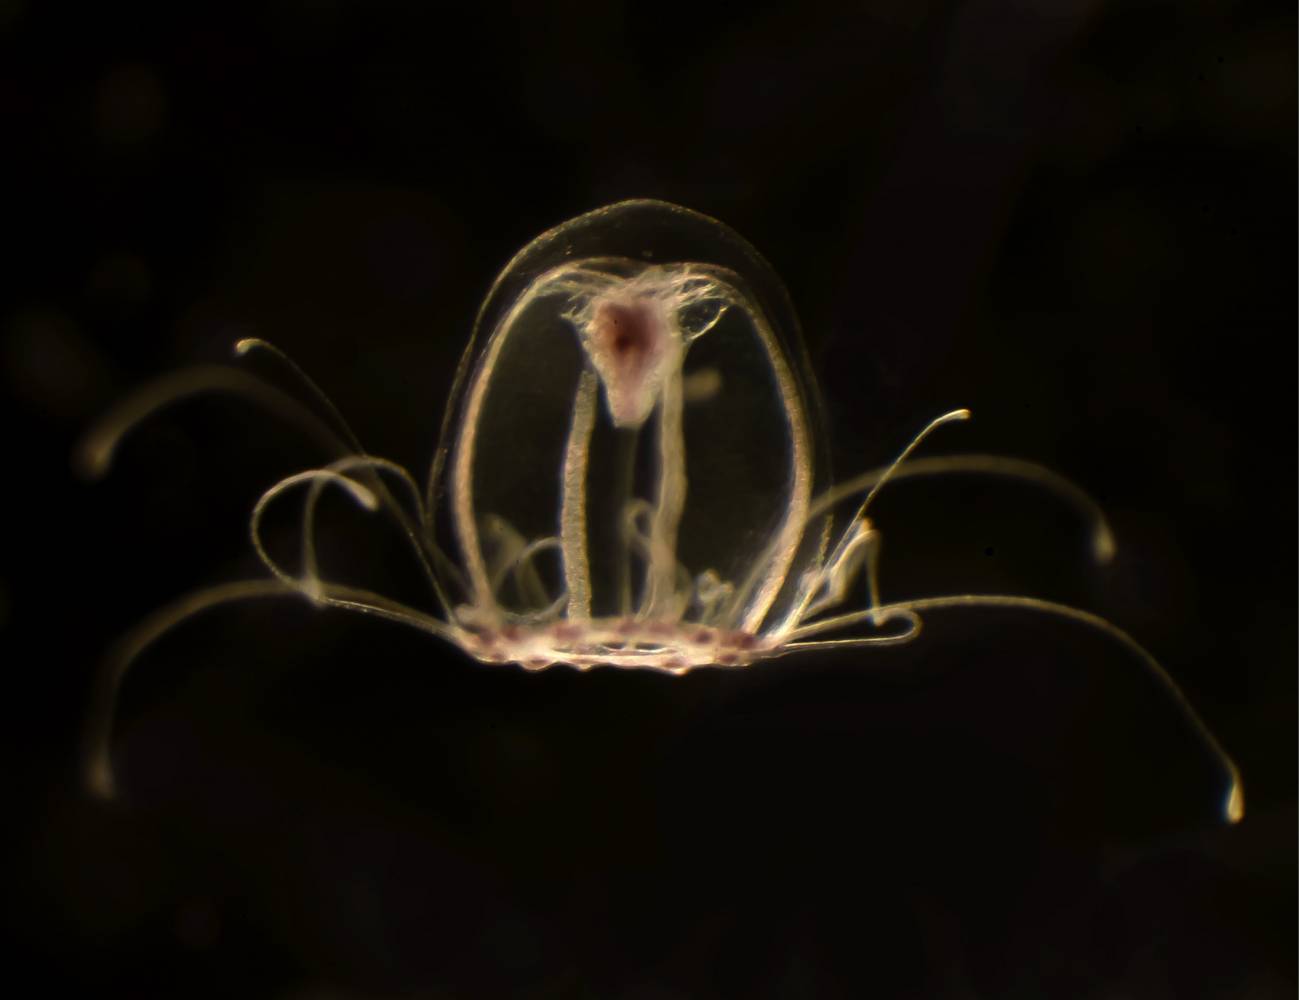 Esta diminuta medusa, de tan solo unos pocos milímetros de longitud, tiene la asombrosa capacidad de revertir la dirección de su ciclo vital hacia un estadio anterior asexual llamado pólipo